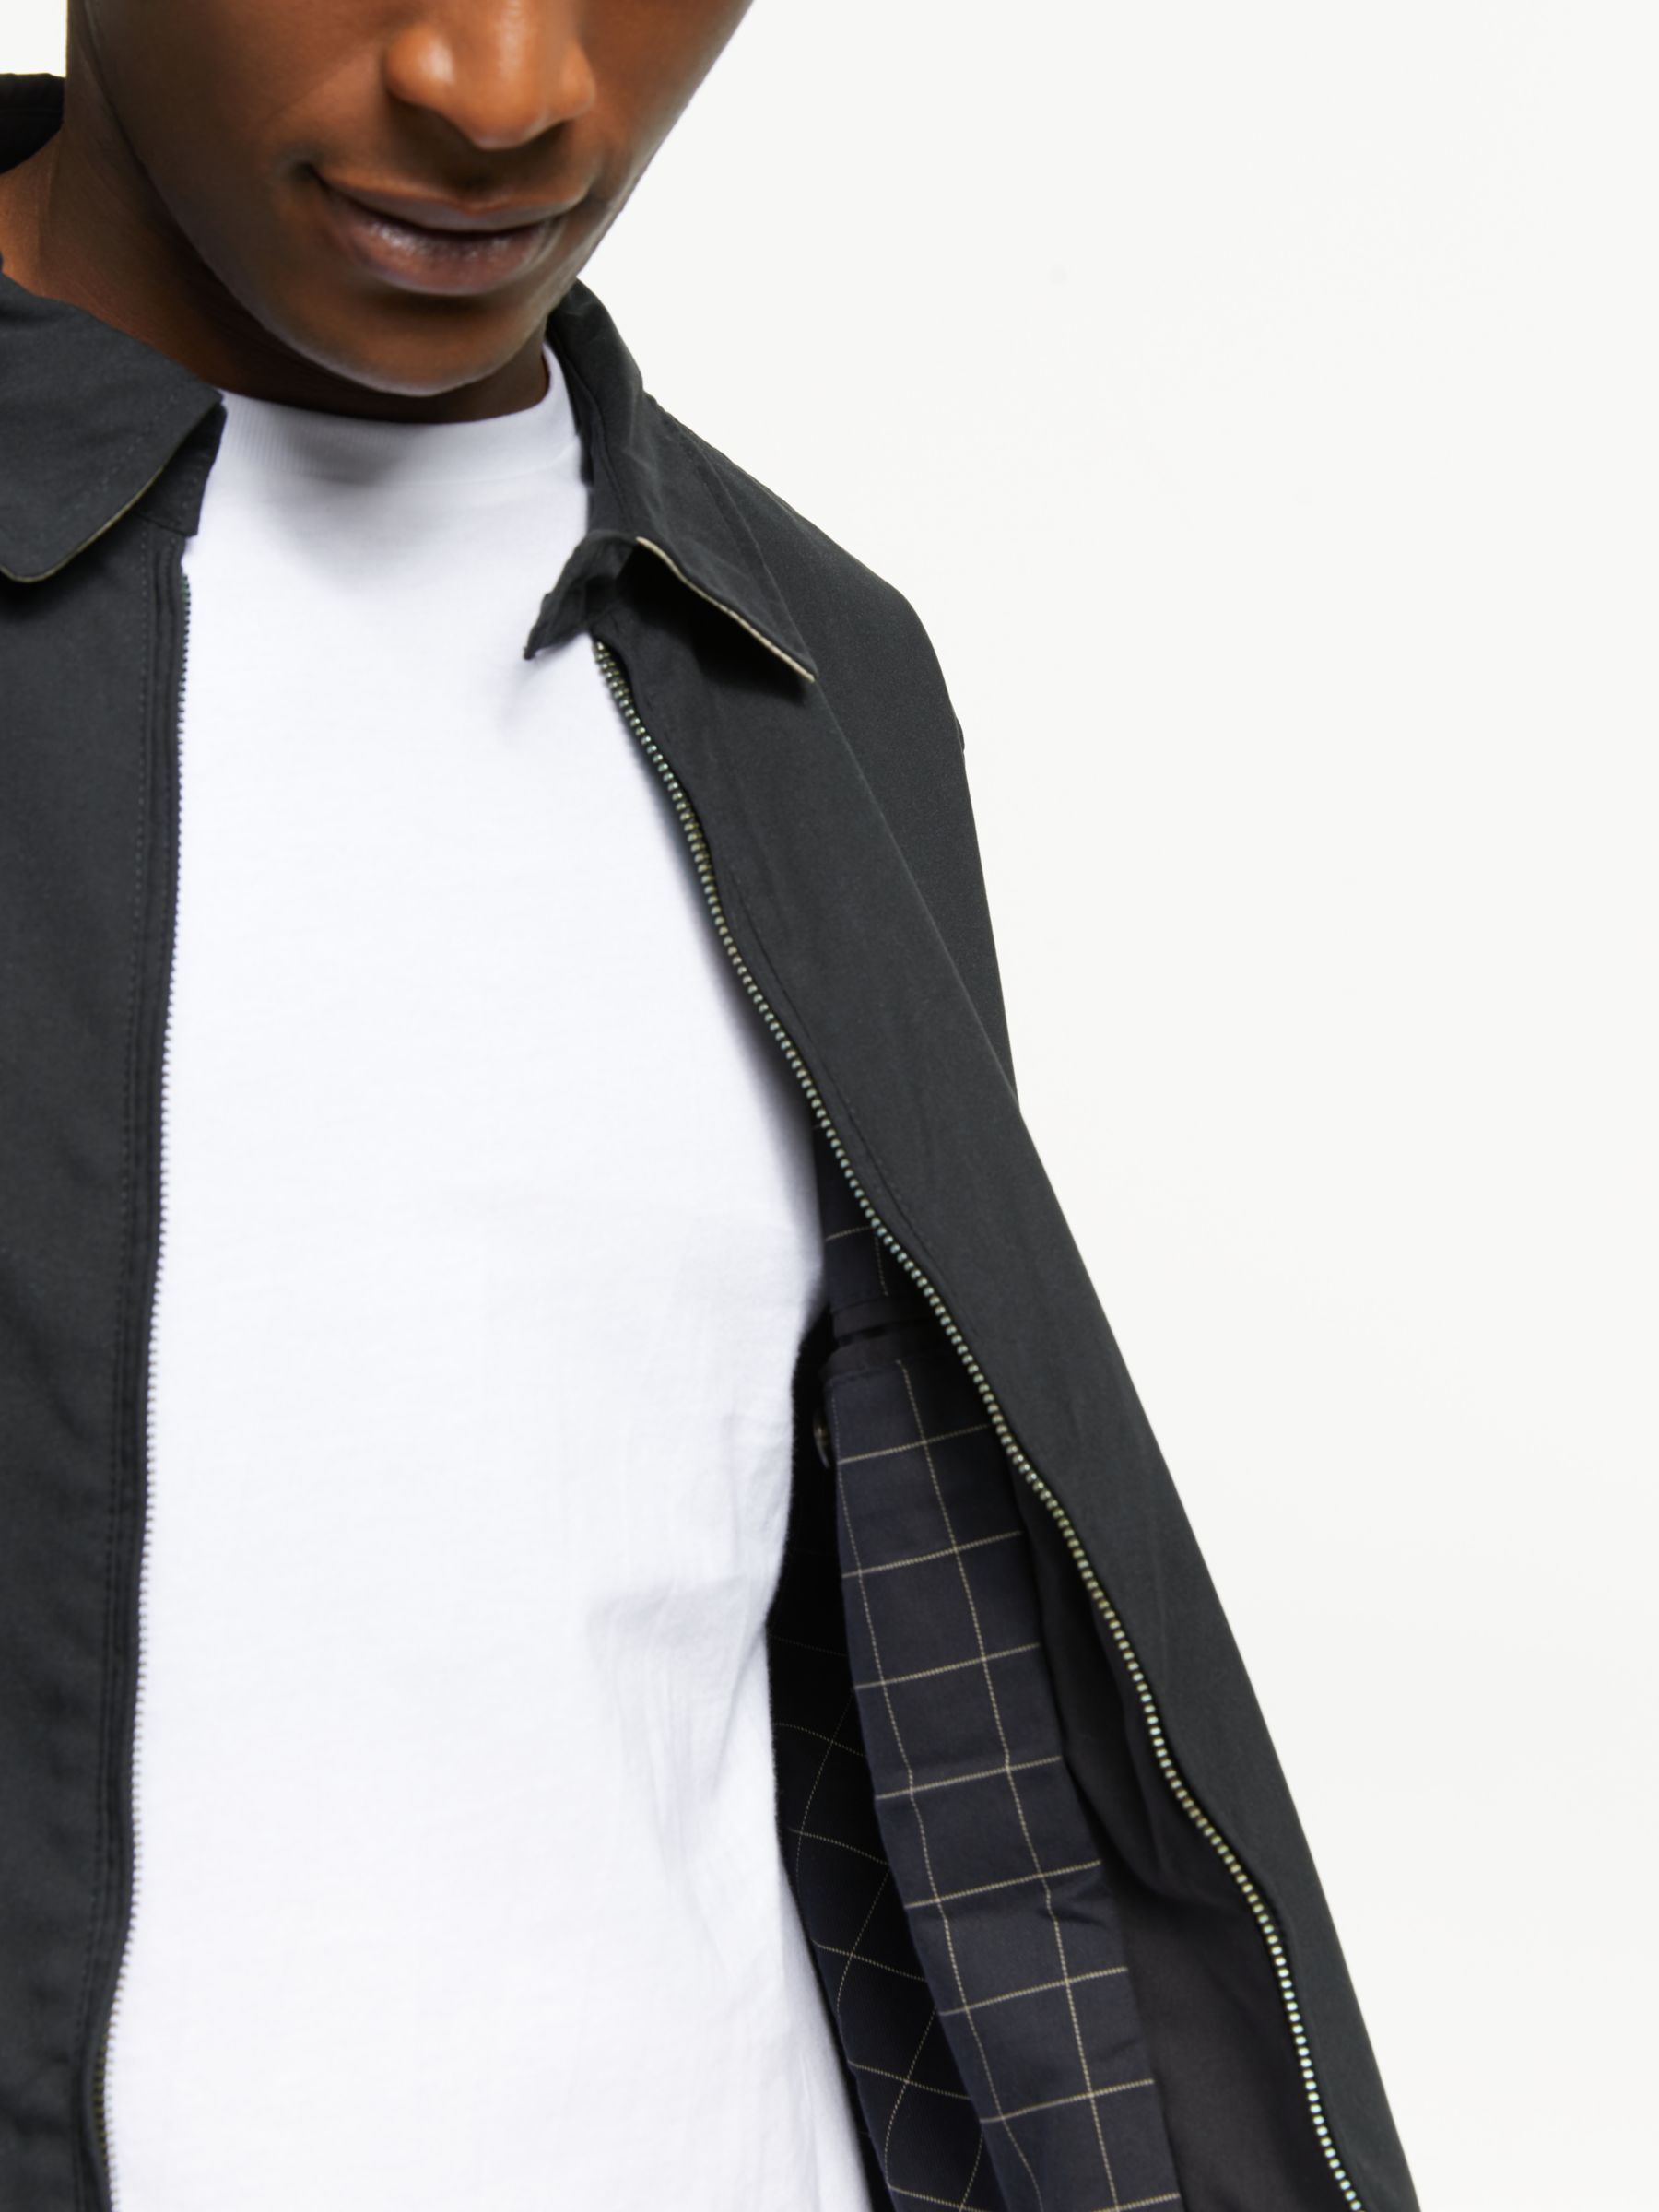 Polo Ralph Lauren Bi-Swing Water-Repellent Windbreaker Jacket, Black, S